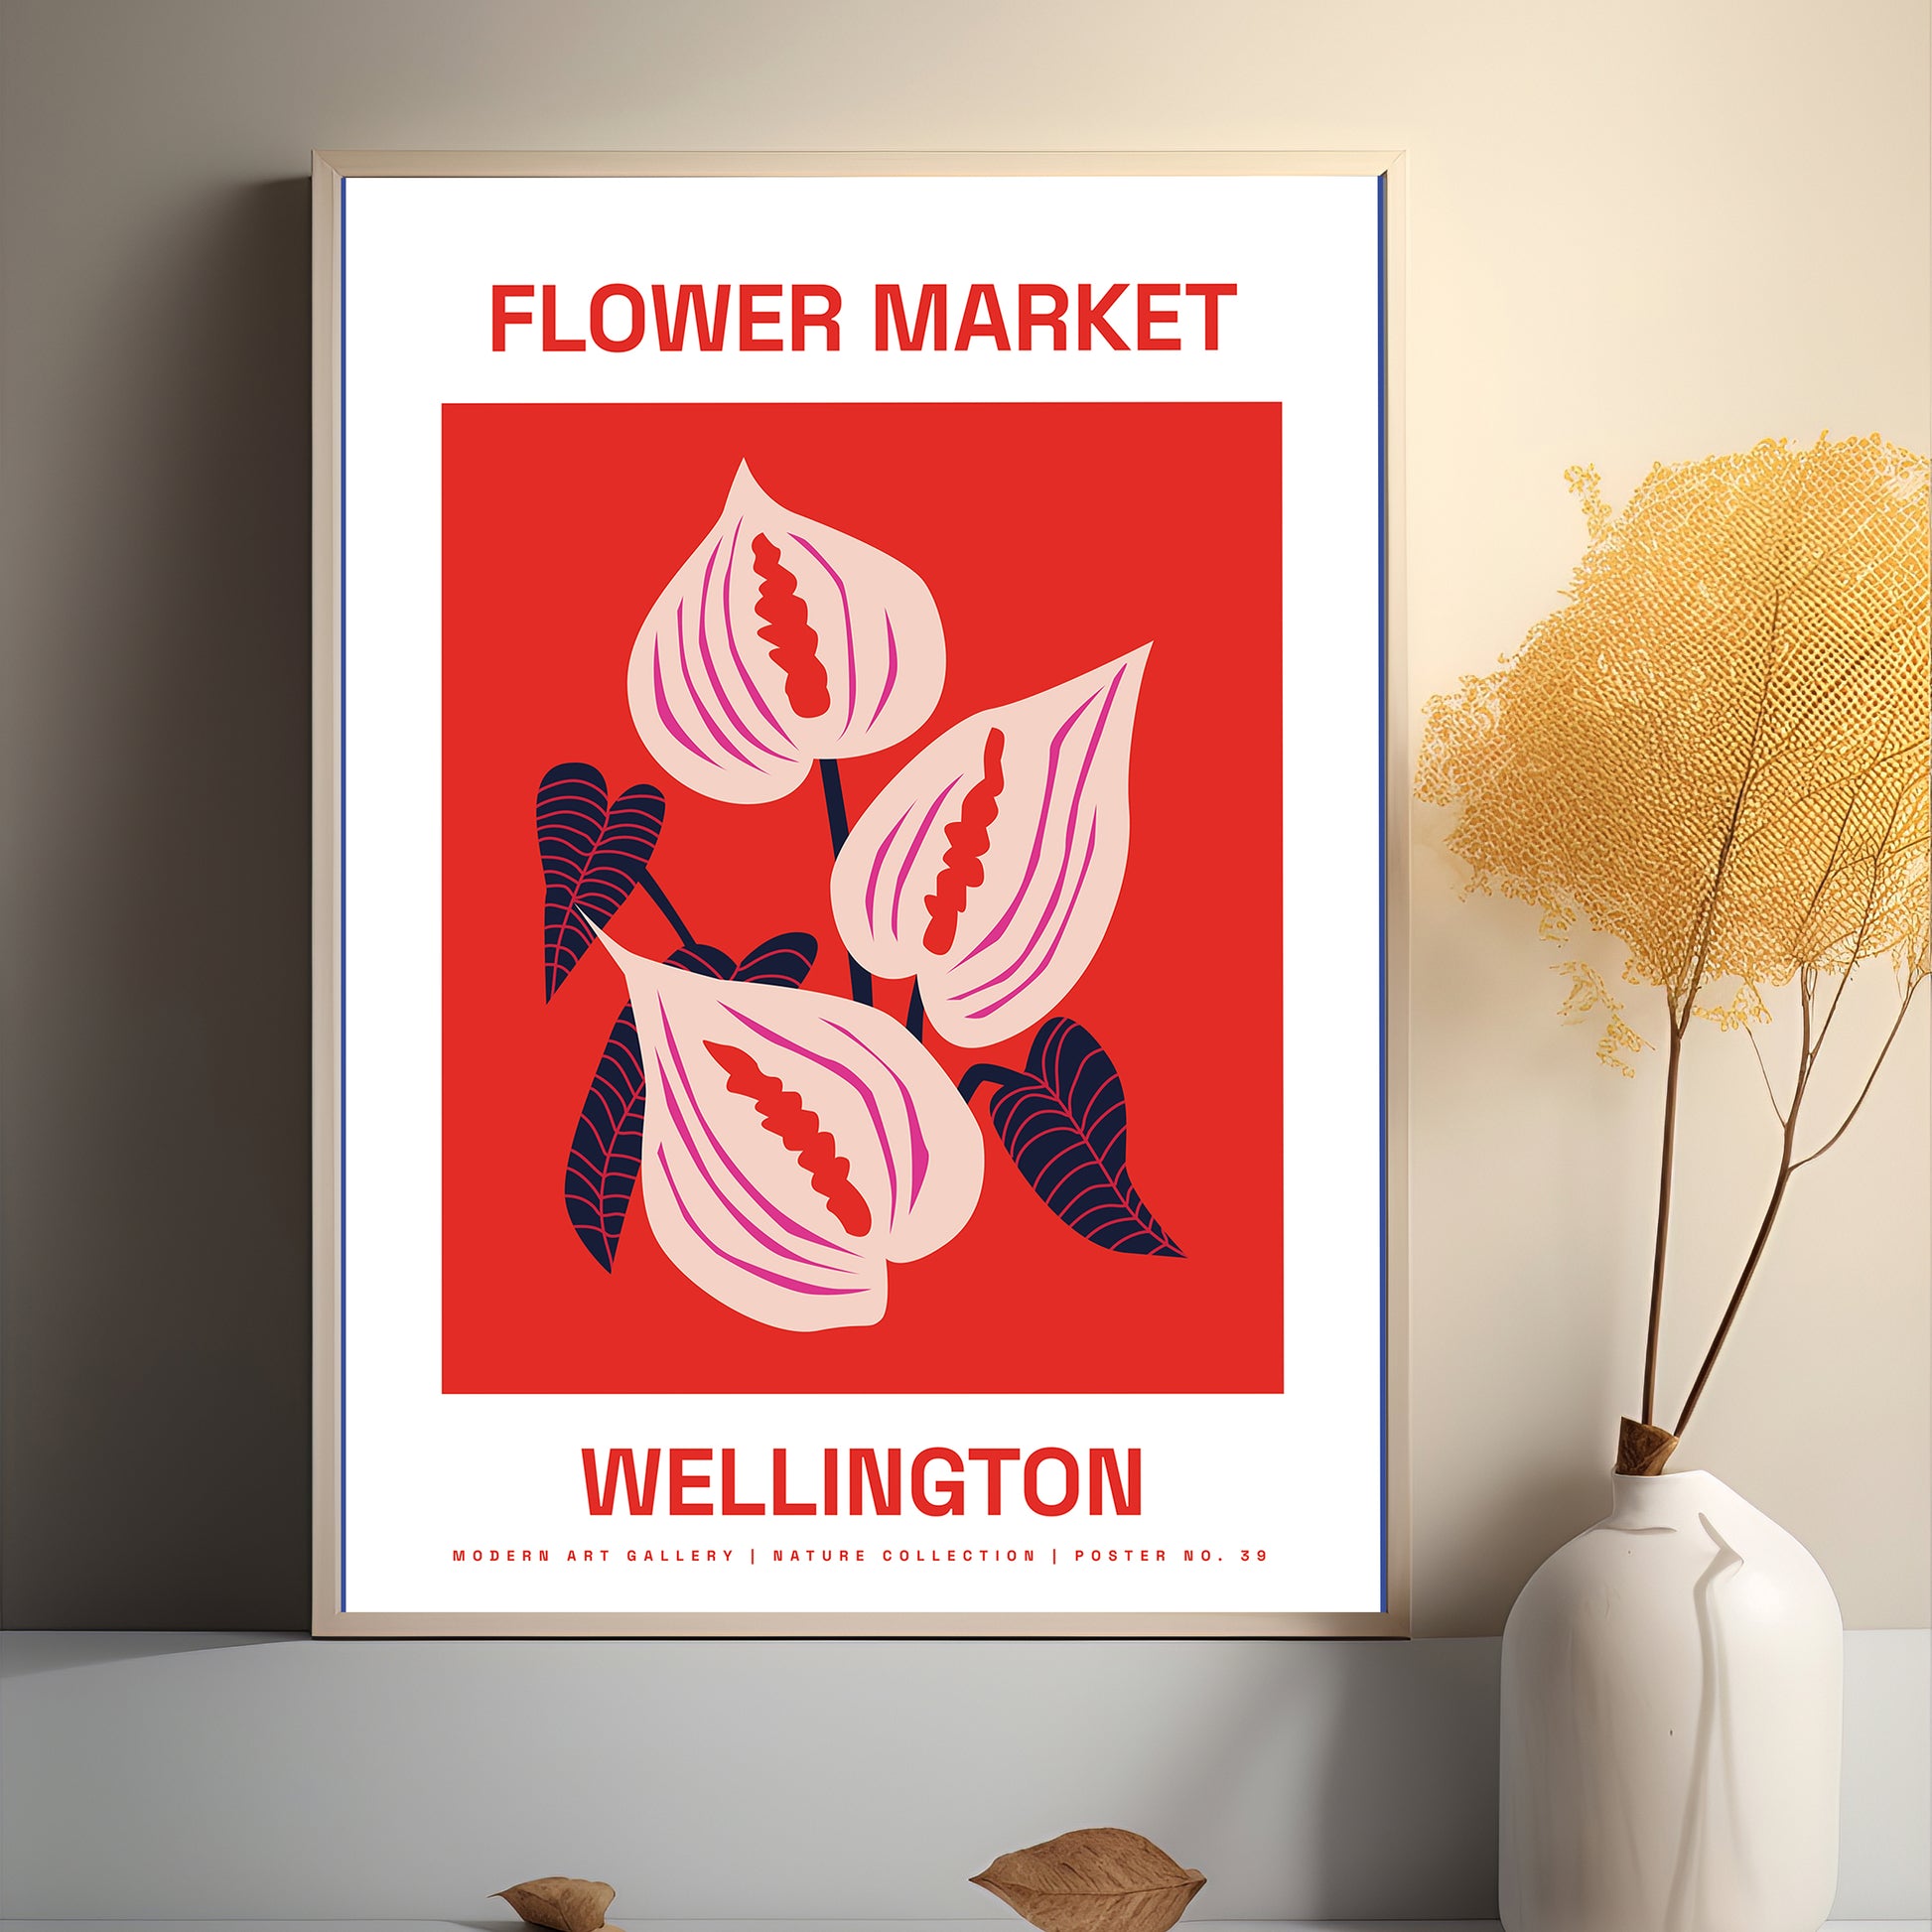 Wellington’s vibrant flower market poster.